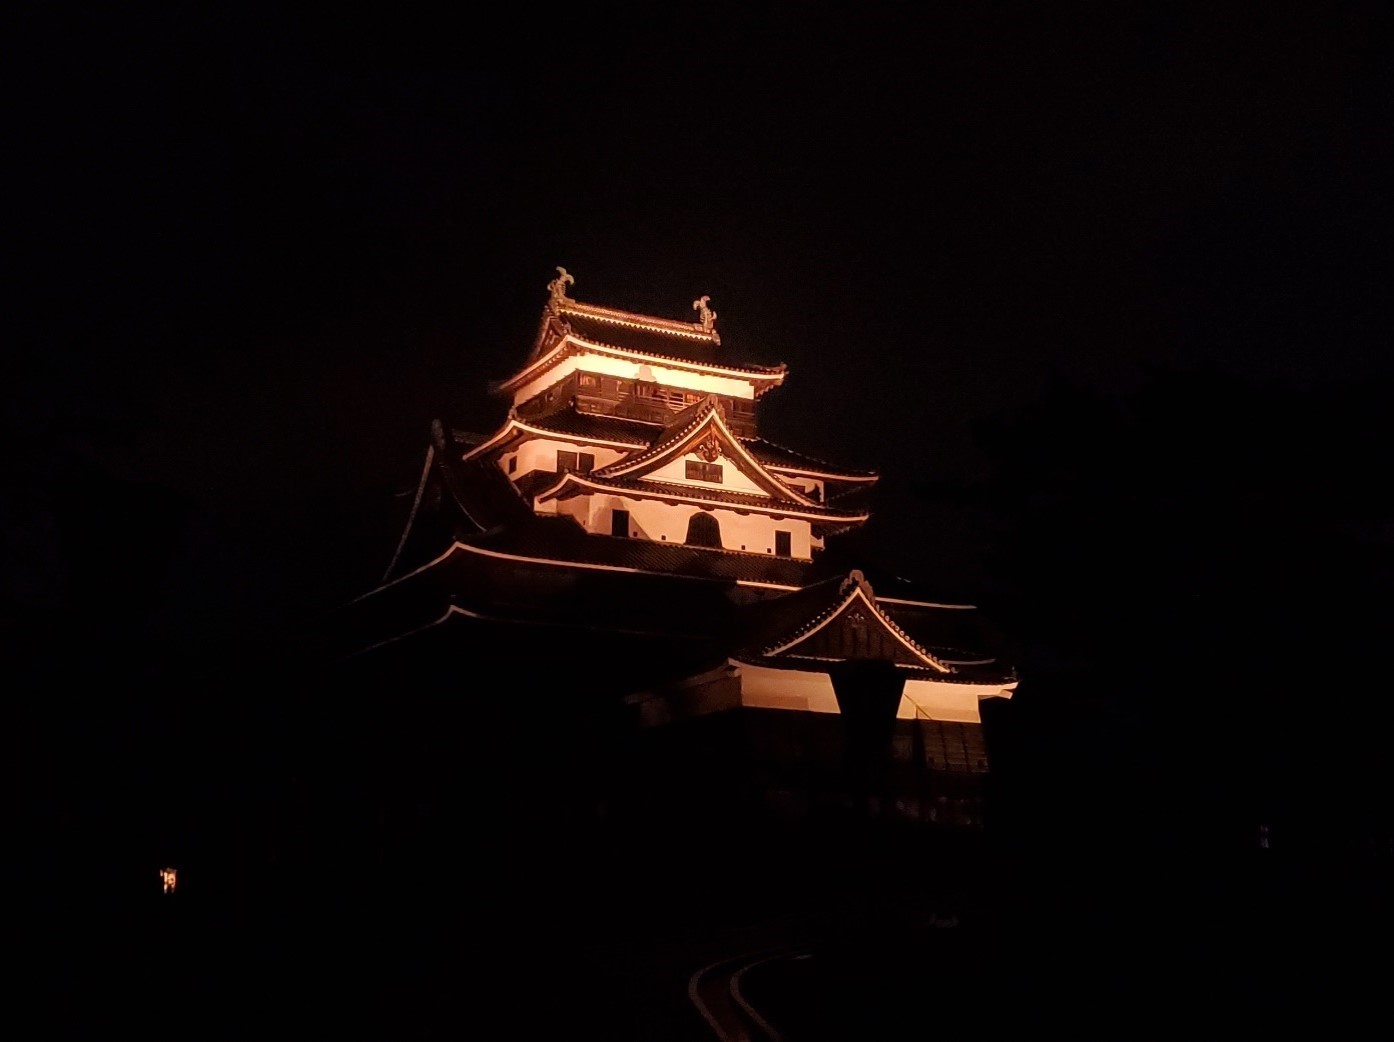 夜にオレンジ色にライトアップされた松江城の写真